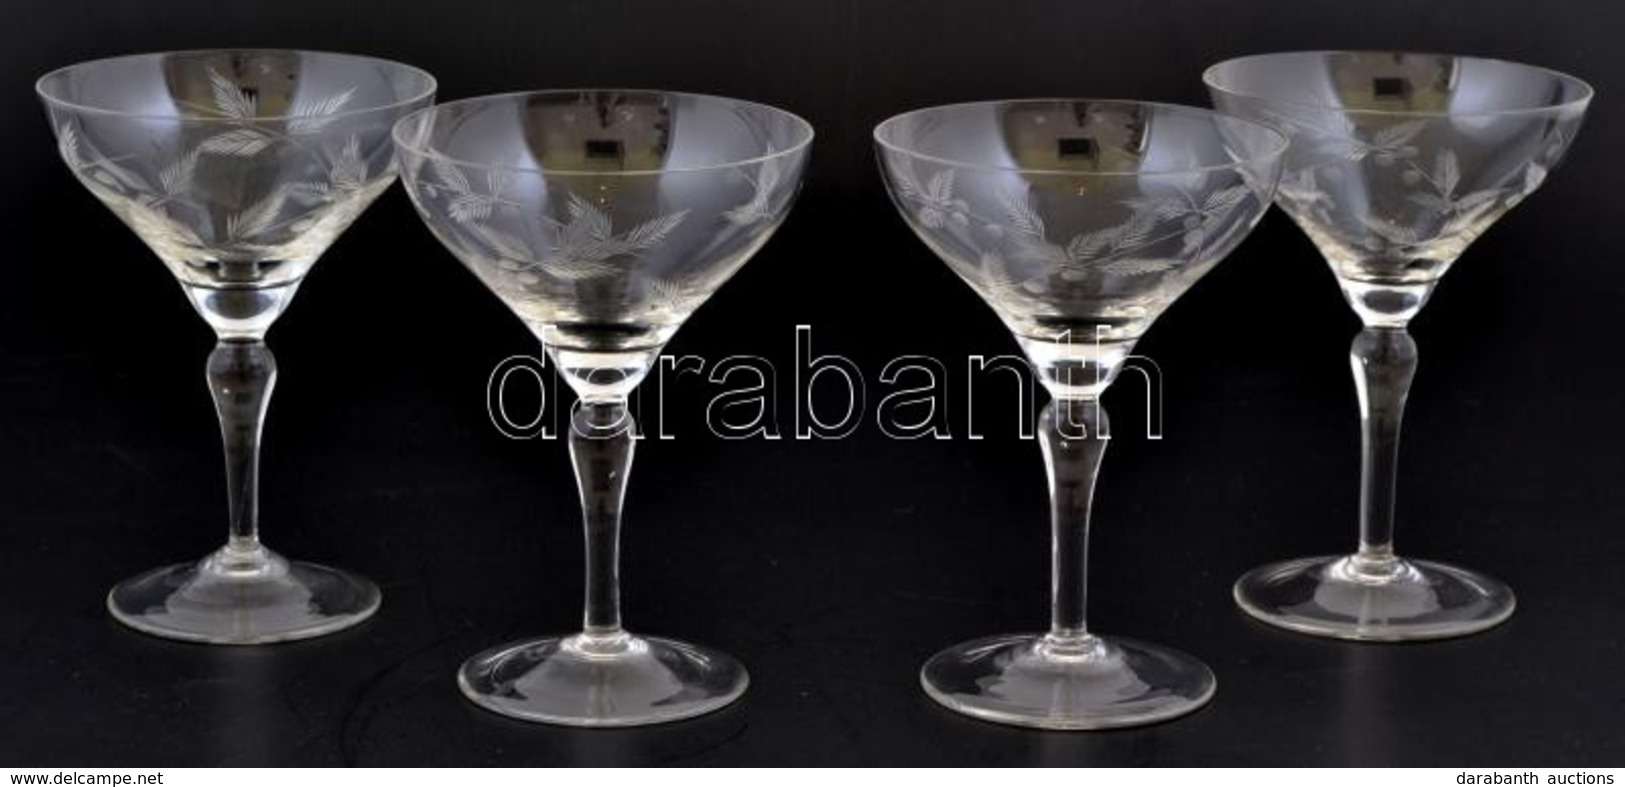 Metszett üveg Koktélos Poharak, 4 Db, Kis Hibákkal, M: 13,5 Cm - Verre & Cristal